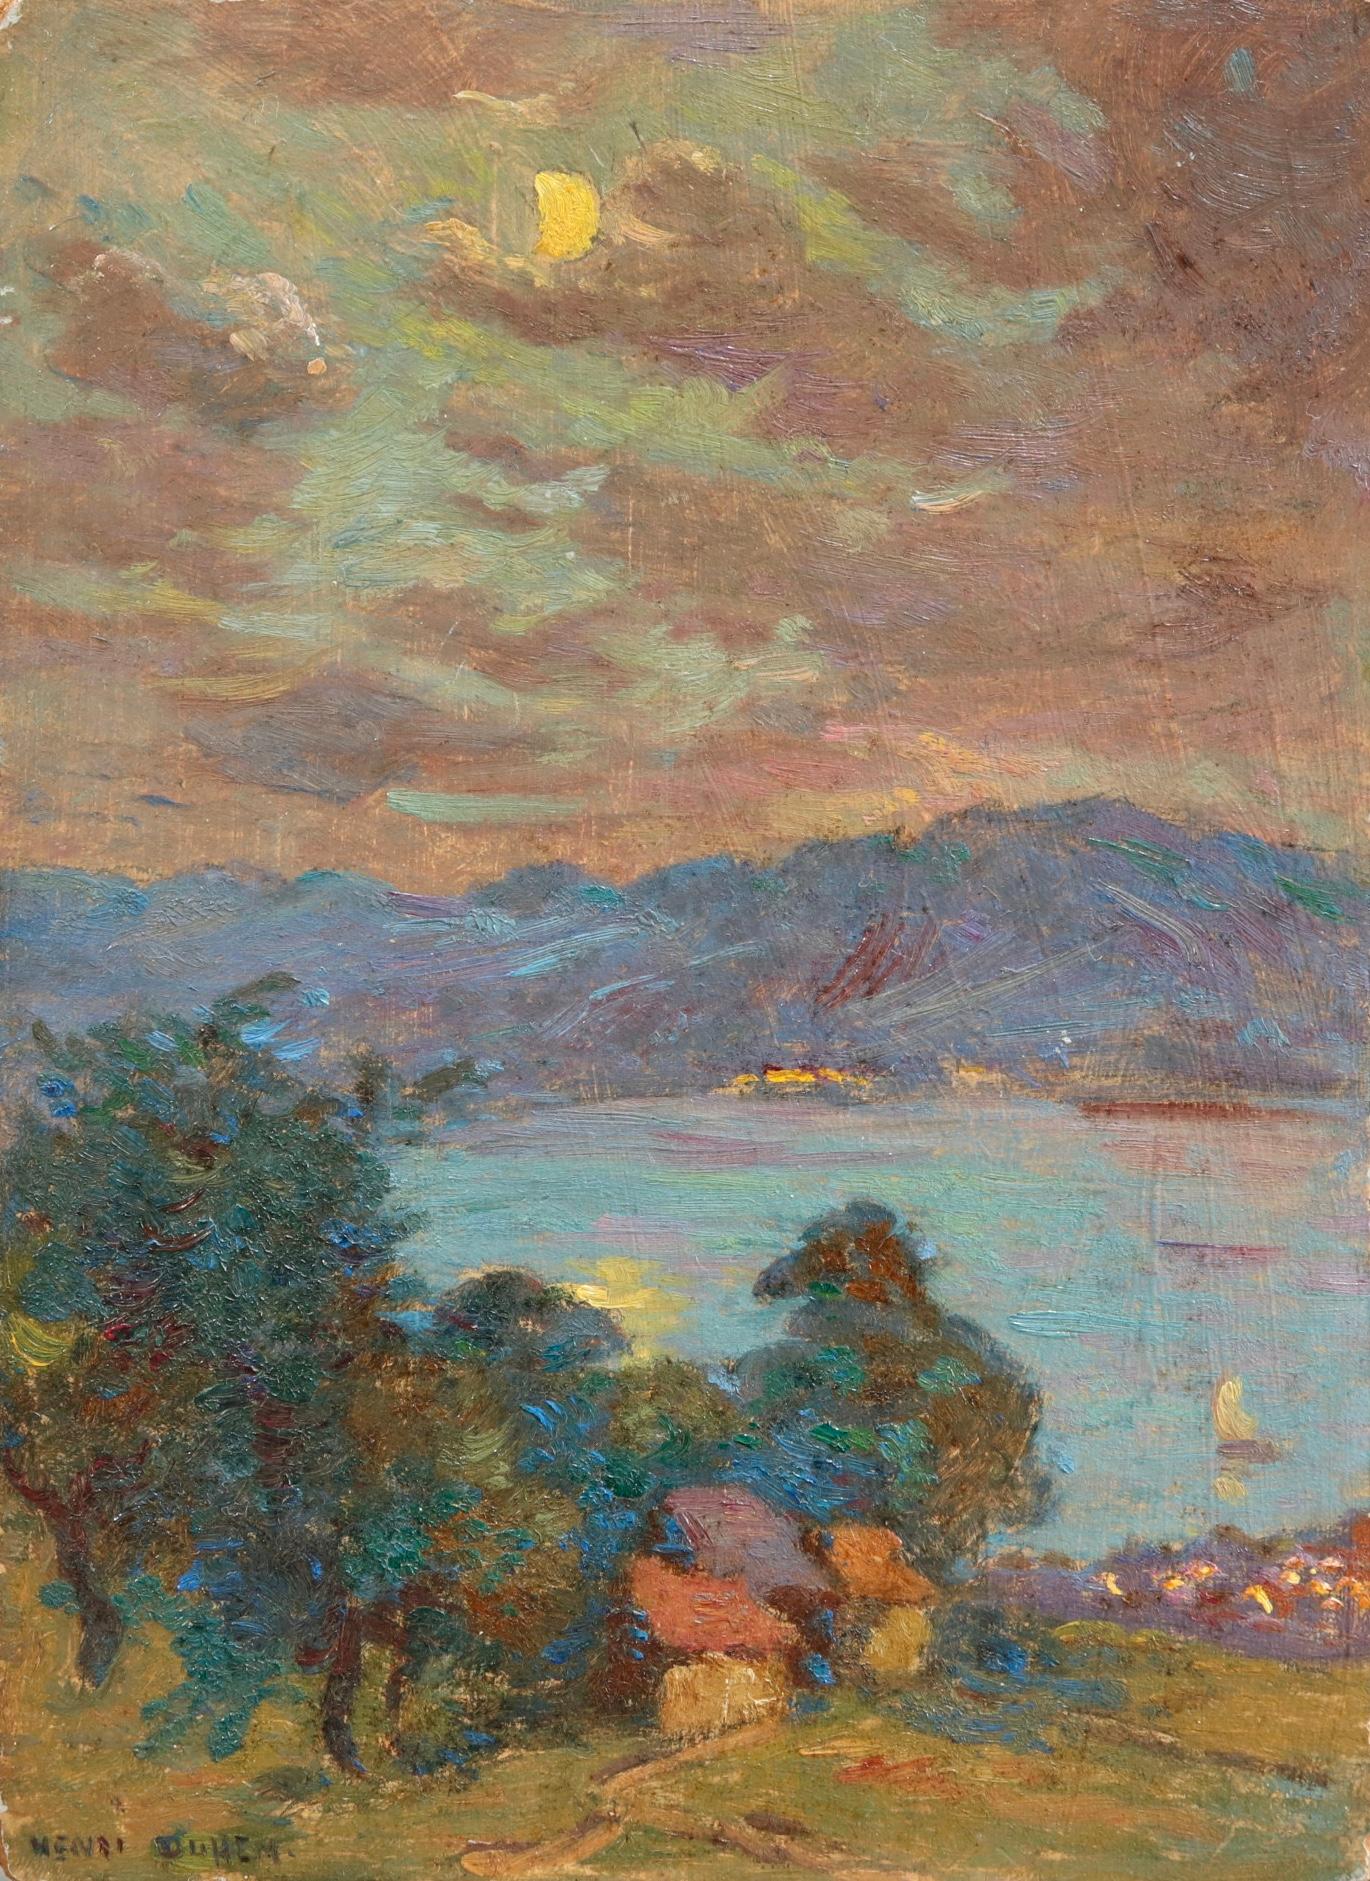 Henri Duhem Landscape Painting - Clair de lune - Lac Geneva - 19th Century Oil, Lake in Moonlit Landscape - Duhem